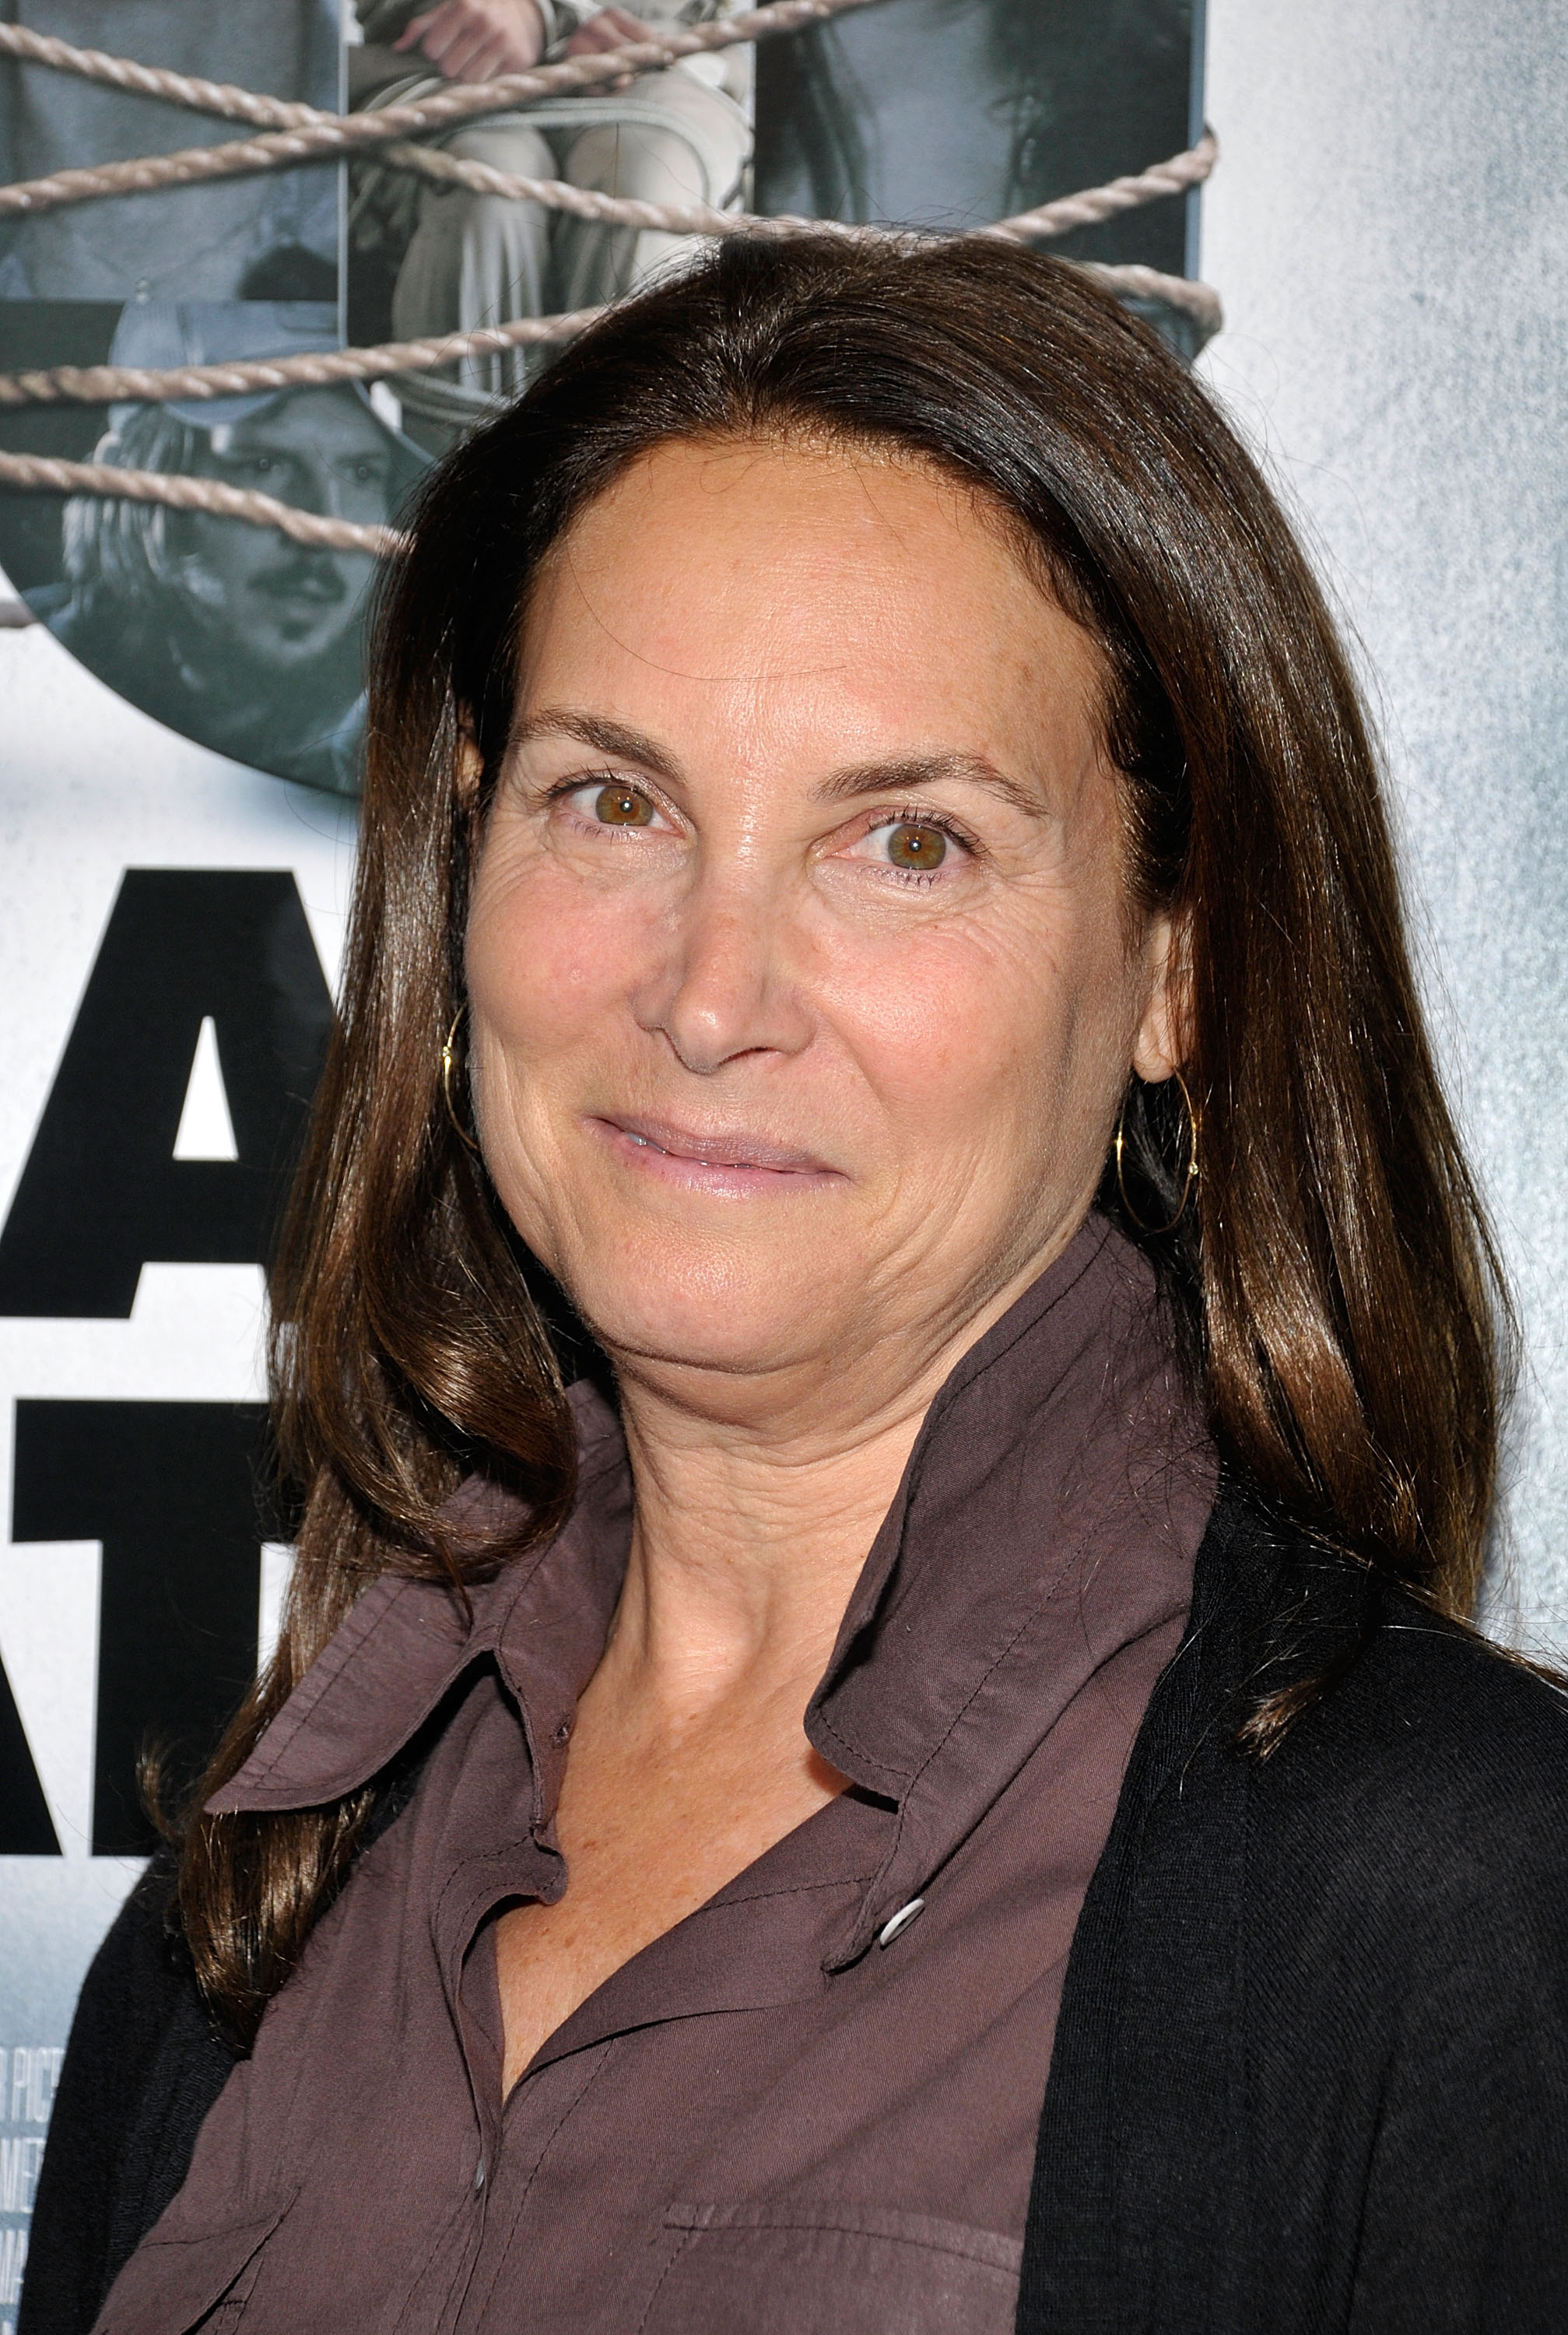 Die Frau bei einer Vorführung des Films "Ten Years Later" in Los Angeles, Kalifornien am 16. Juli 2009. | Quelle: Getty Images